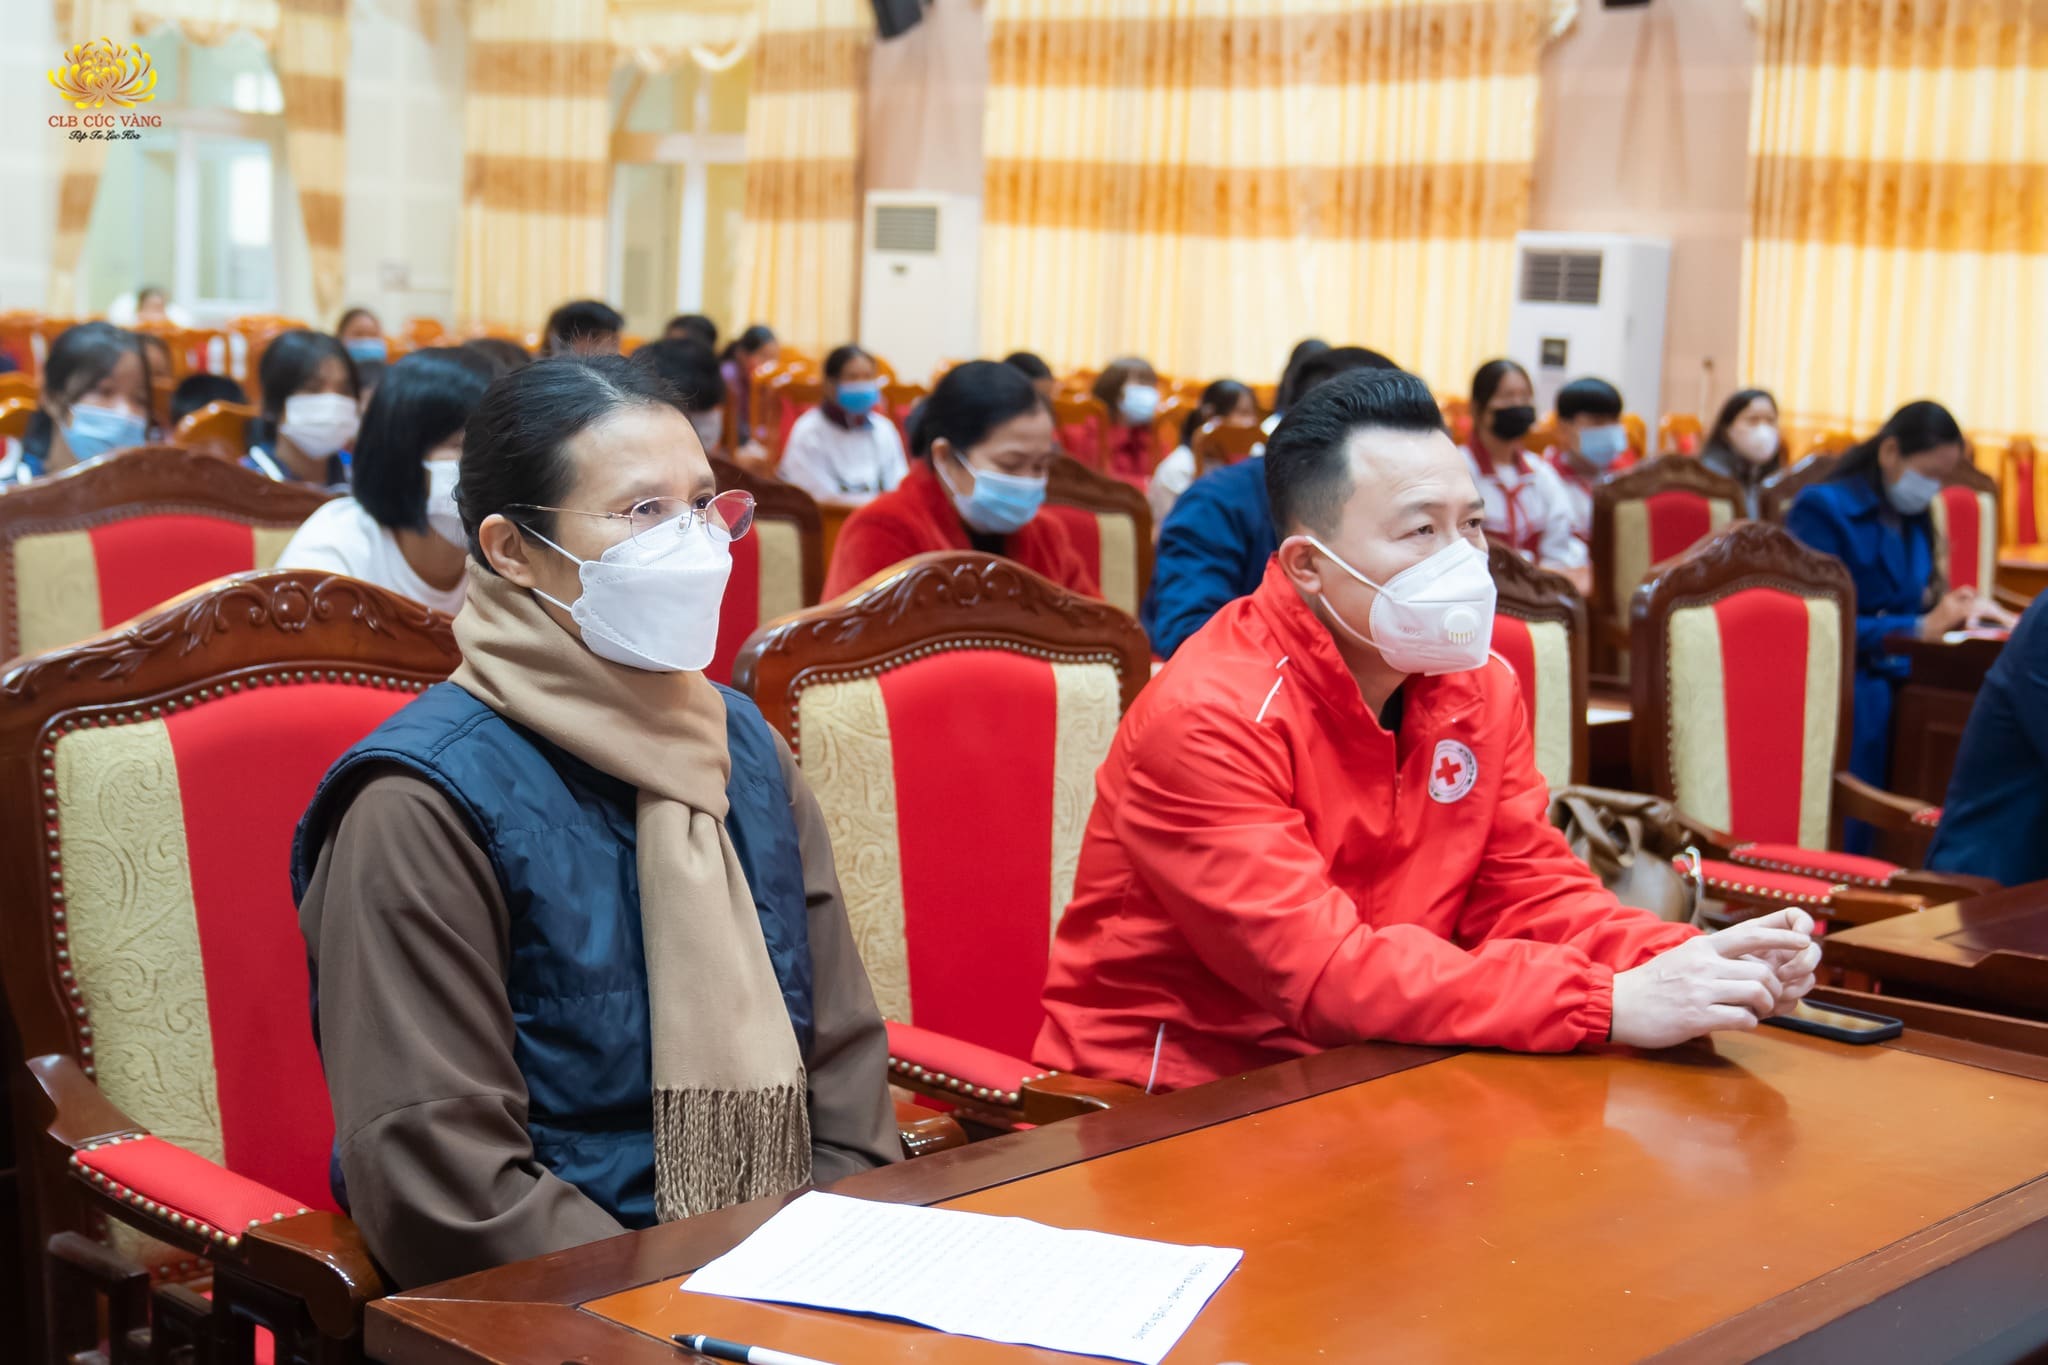 Đồng hành cùng đoàn có ông Nguyễn Hoàng Long - Chủ tịch Hội chữ Thập đỏ tỉnh Tuyên Quang